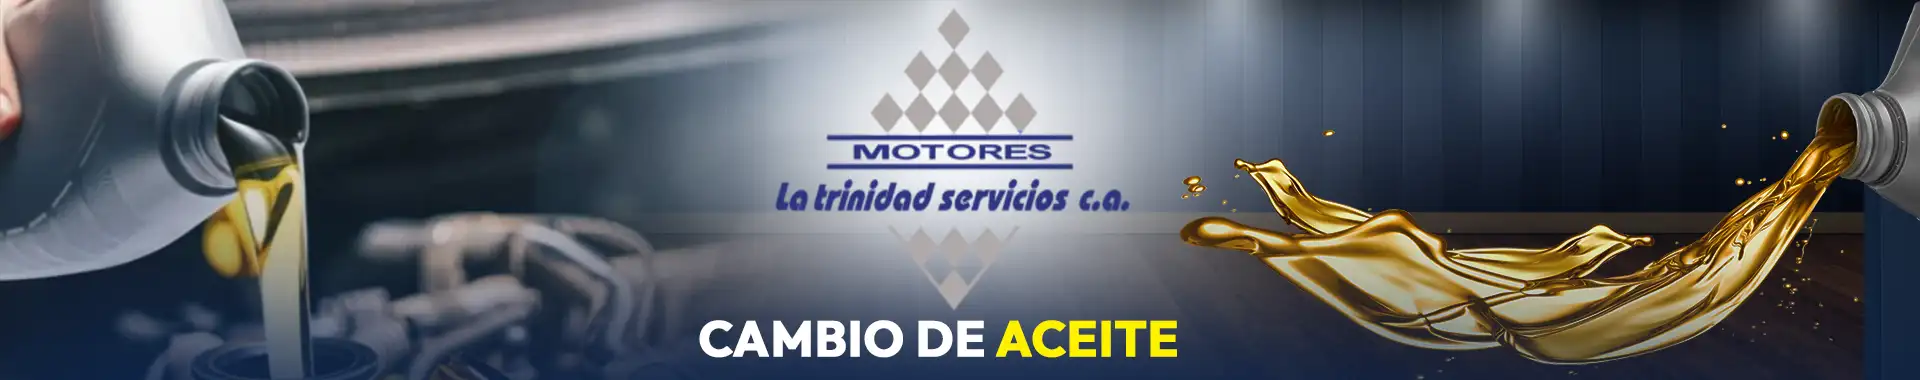 Imagen 3 del perfil de Motores La Trinidad - Servicios